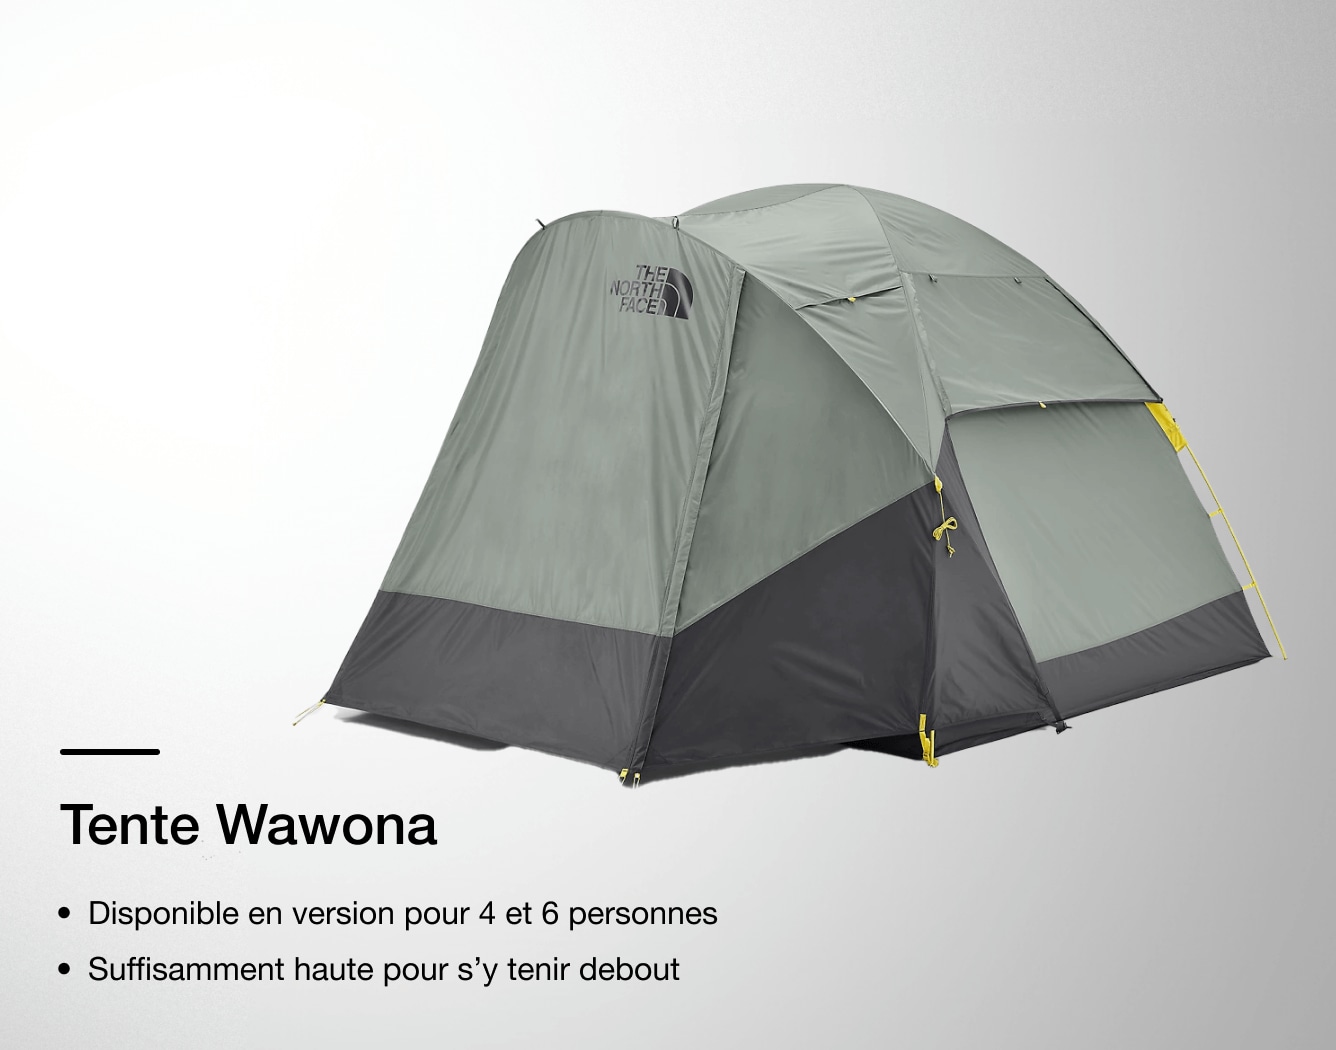 Image de la tente Wawona de The North Face avec les caractéristiques indiquées en surimpression. 